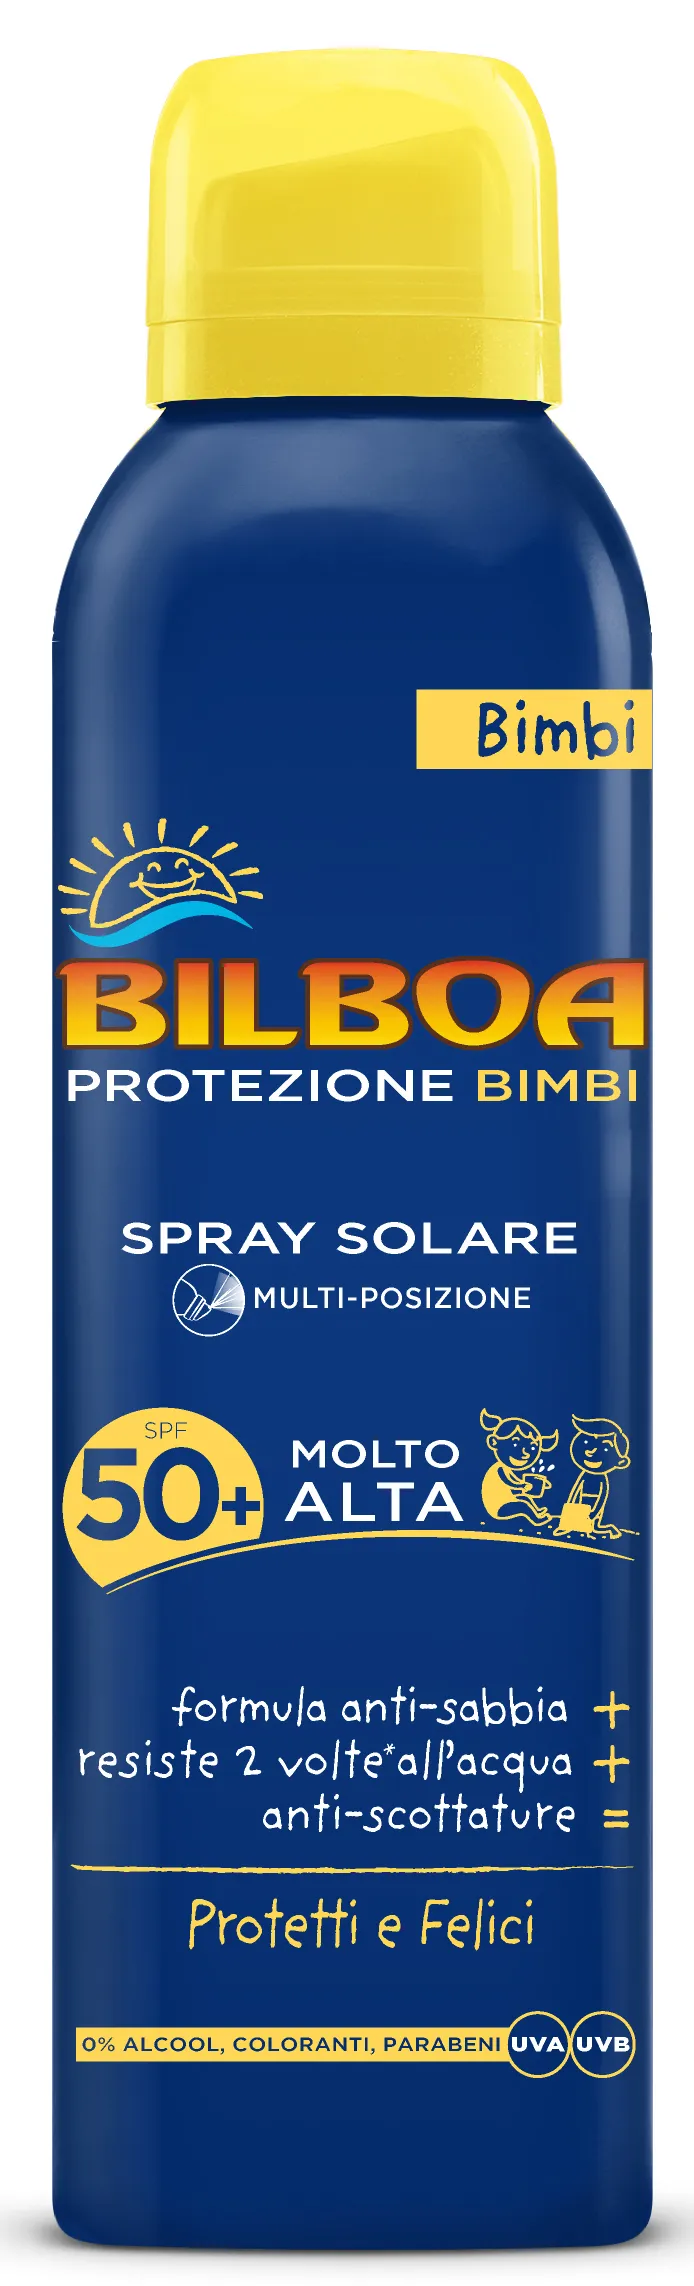 "BILBOA Fp50 + bimbi spray bomboletta 150 ml prodotto solare per la pelle"